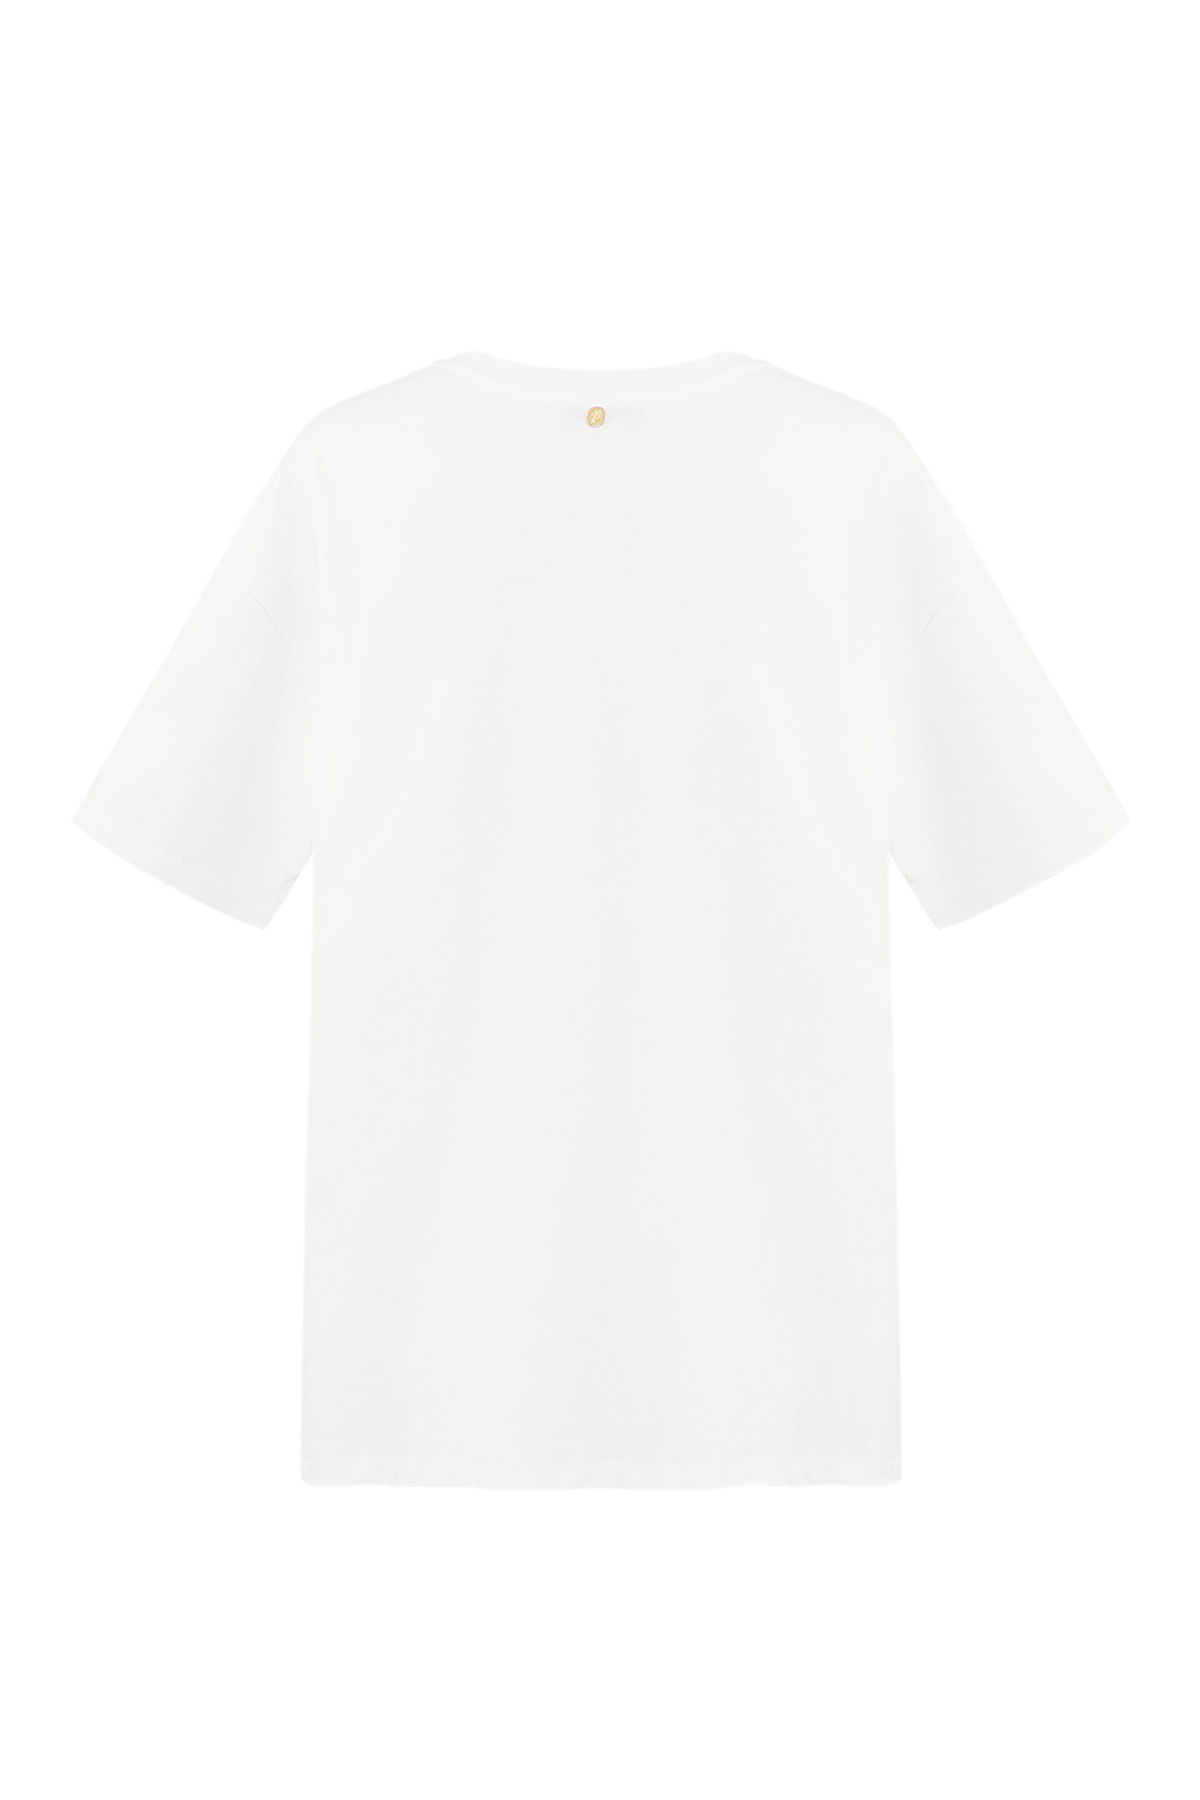 Camiseta mon amour - blanca h5 Imagen8